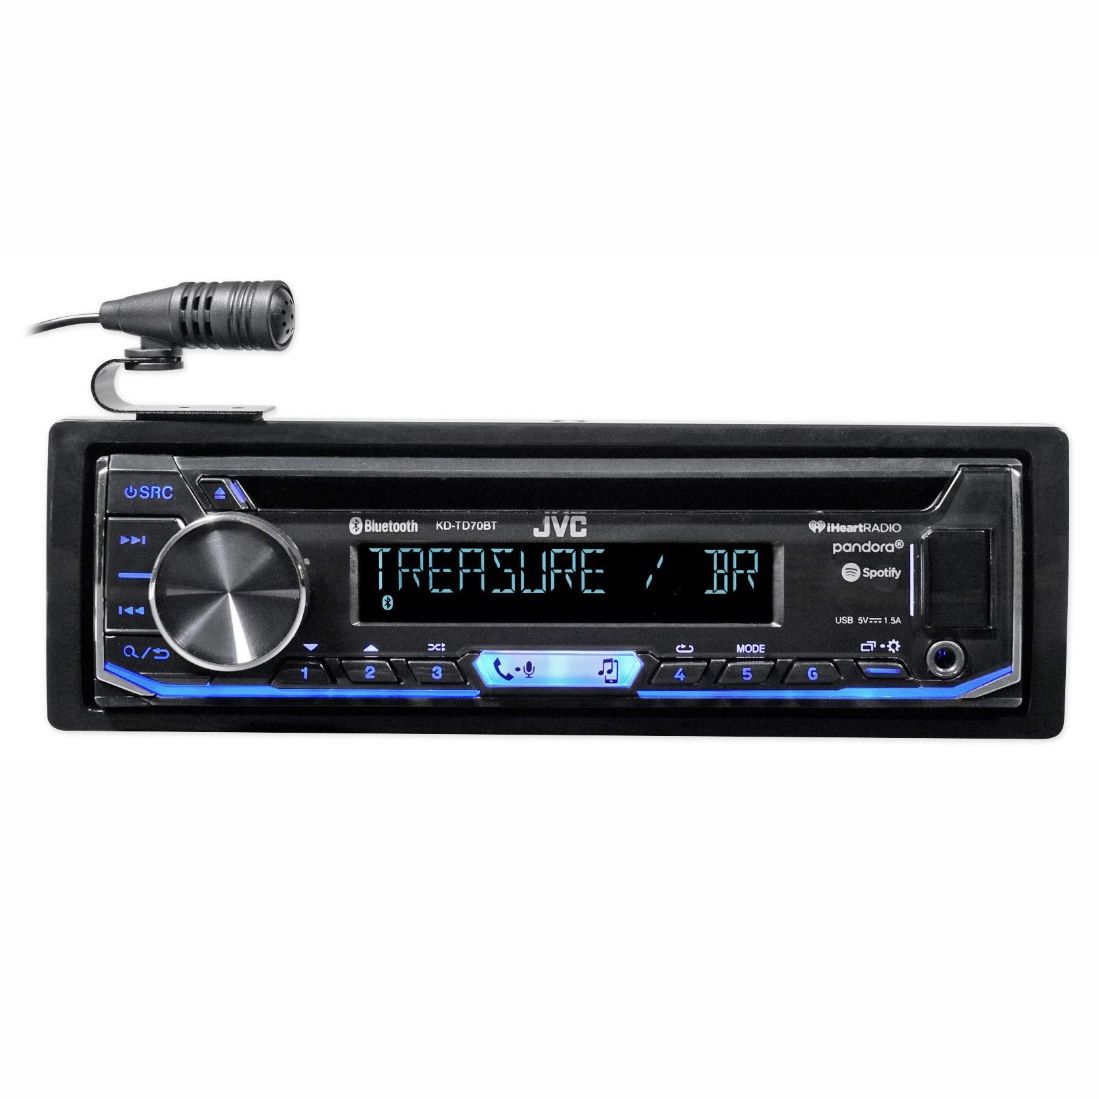 JVC KD-TD70BT Car Radio CD Receiver featuring Bluetooth / USB / Pandora / iHeartRadio /Spotify / FLAC / 13-Band EQ